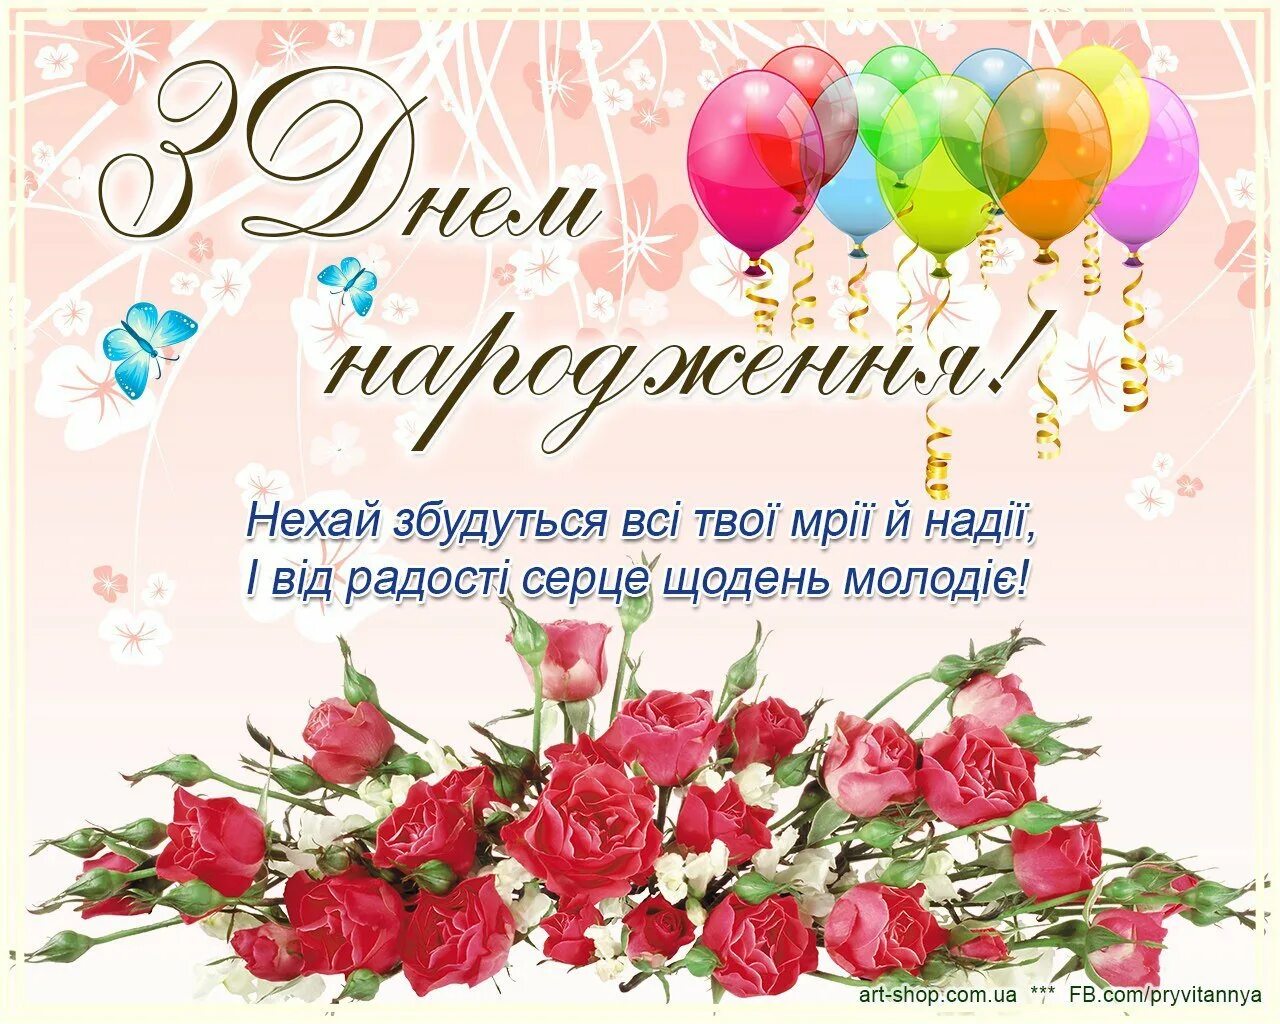 Поздравления с днём рождения на украинском языке. Поздравления с днём рождения на украинском языке открытки. Поздравления с днём рождения женщине на украинском языке. Поздравленя с днём рождения на украинском языке.